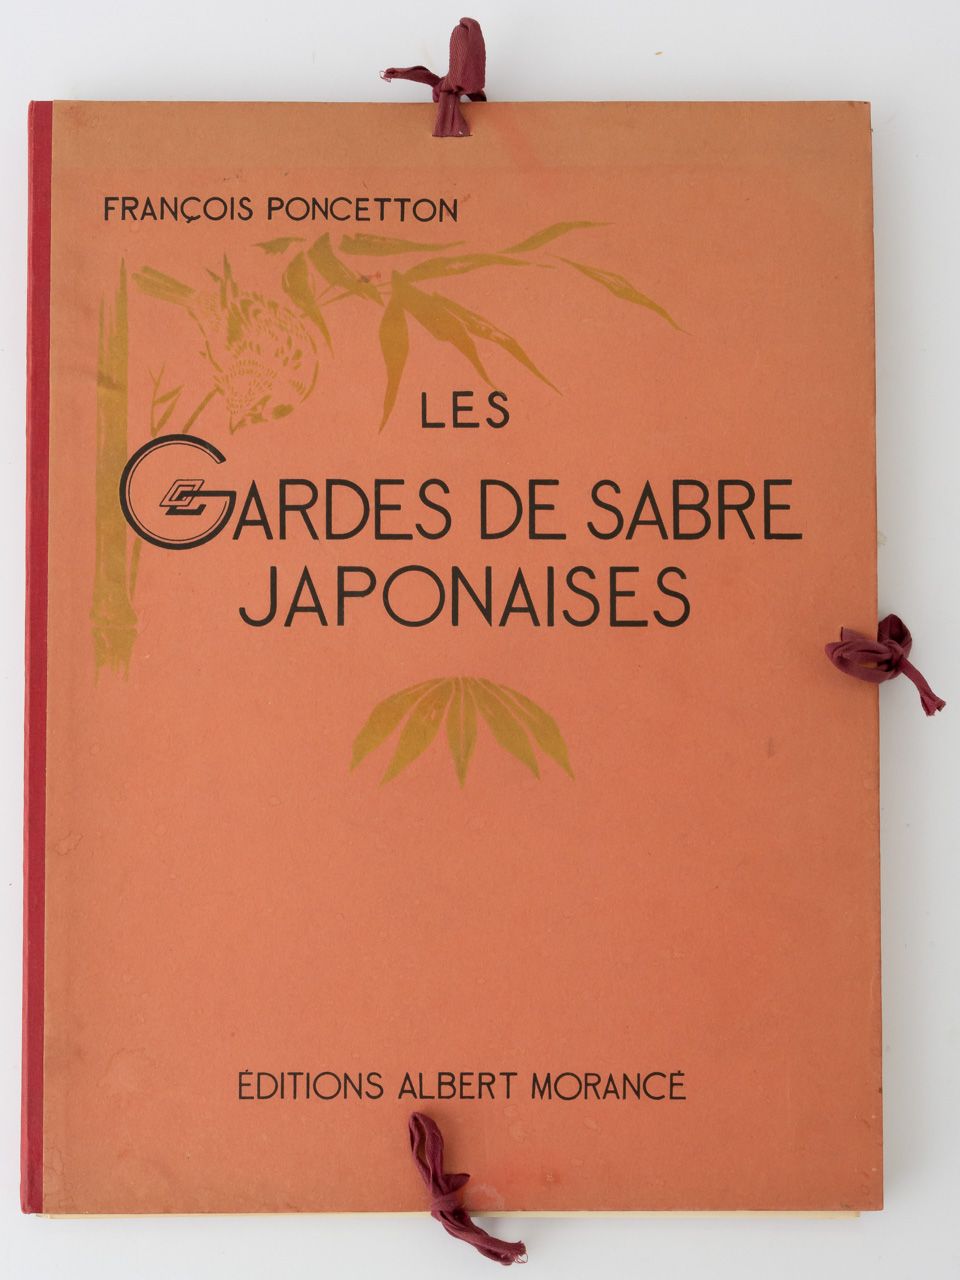 LES GARDES DE SABRE JAPONAISES de Francois Poncetton, Paris 1924

40,9 x 31,2 x &hellip;